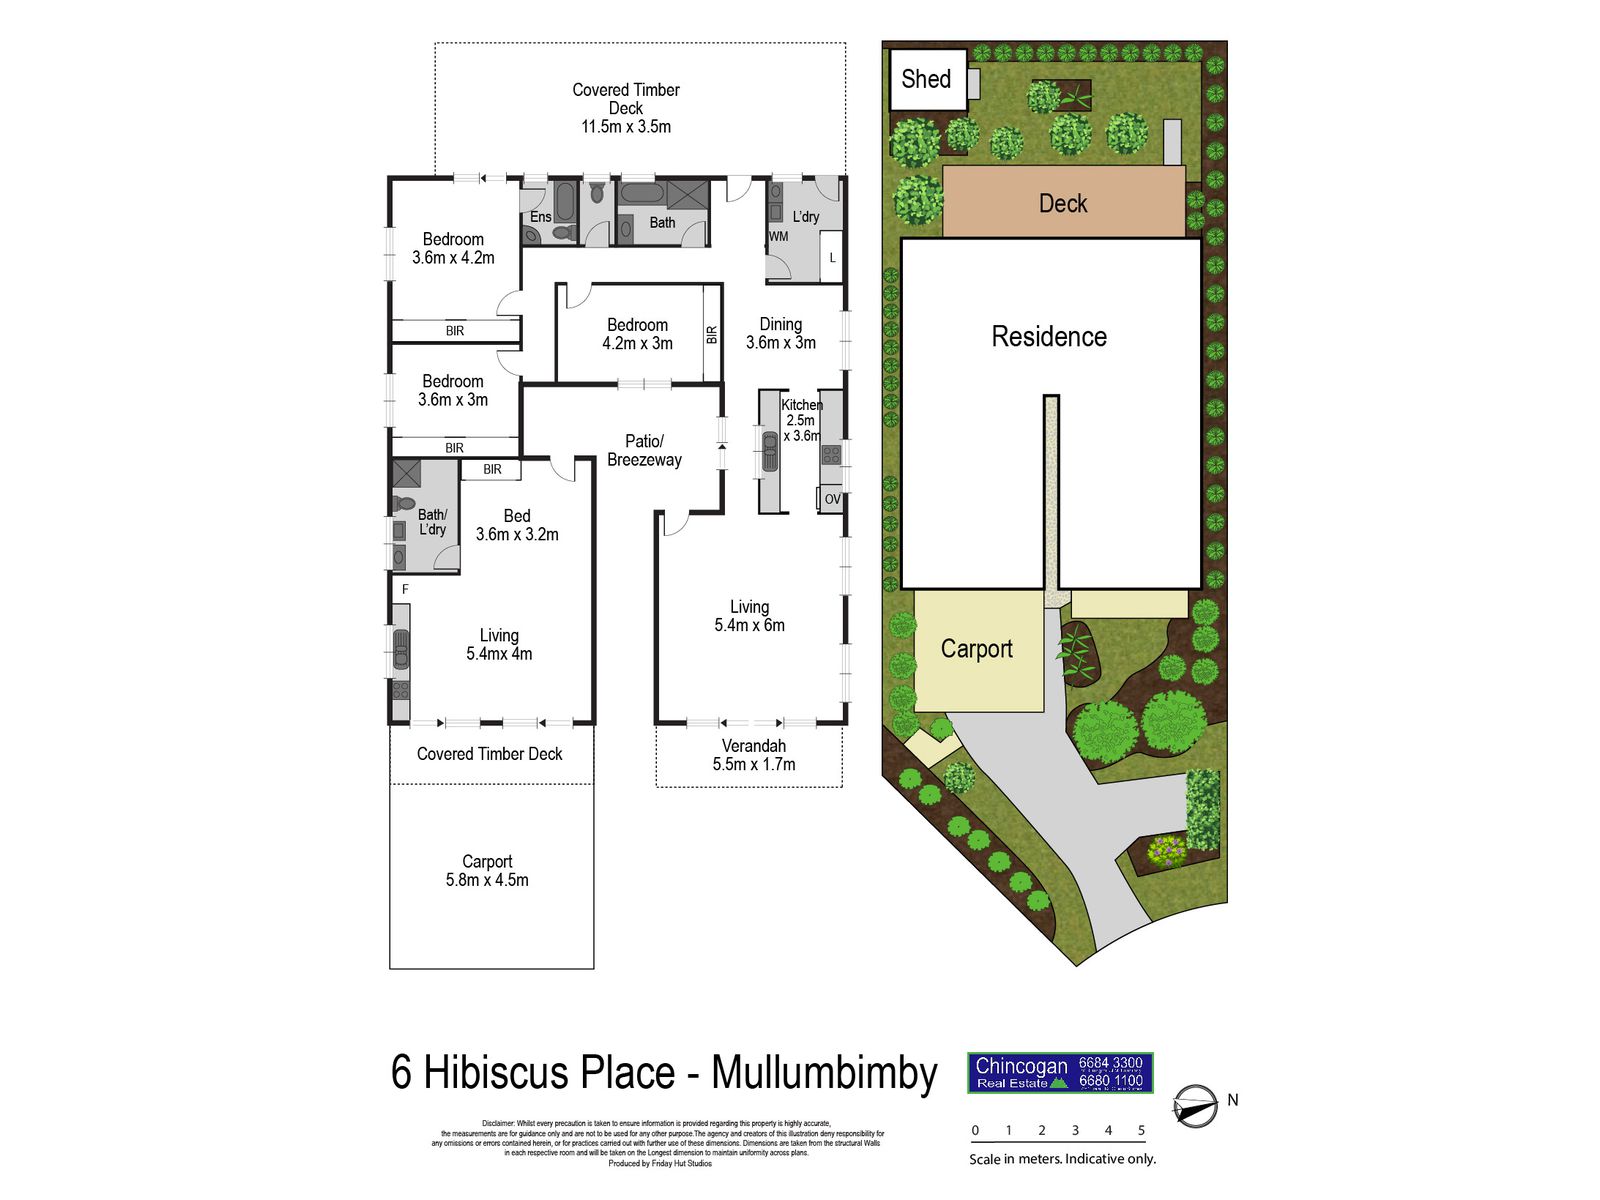 6 Hibiscus Place, Mullumbimby